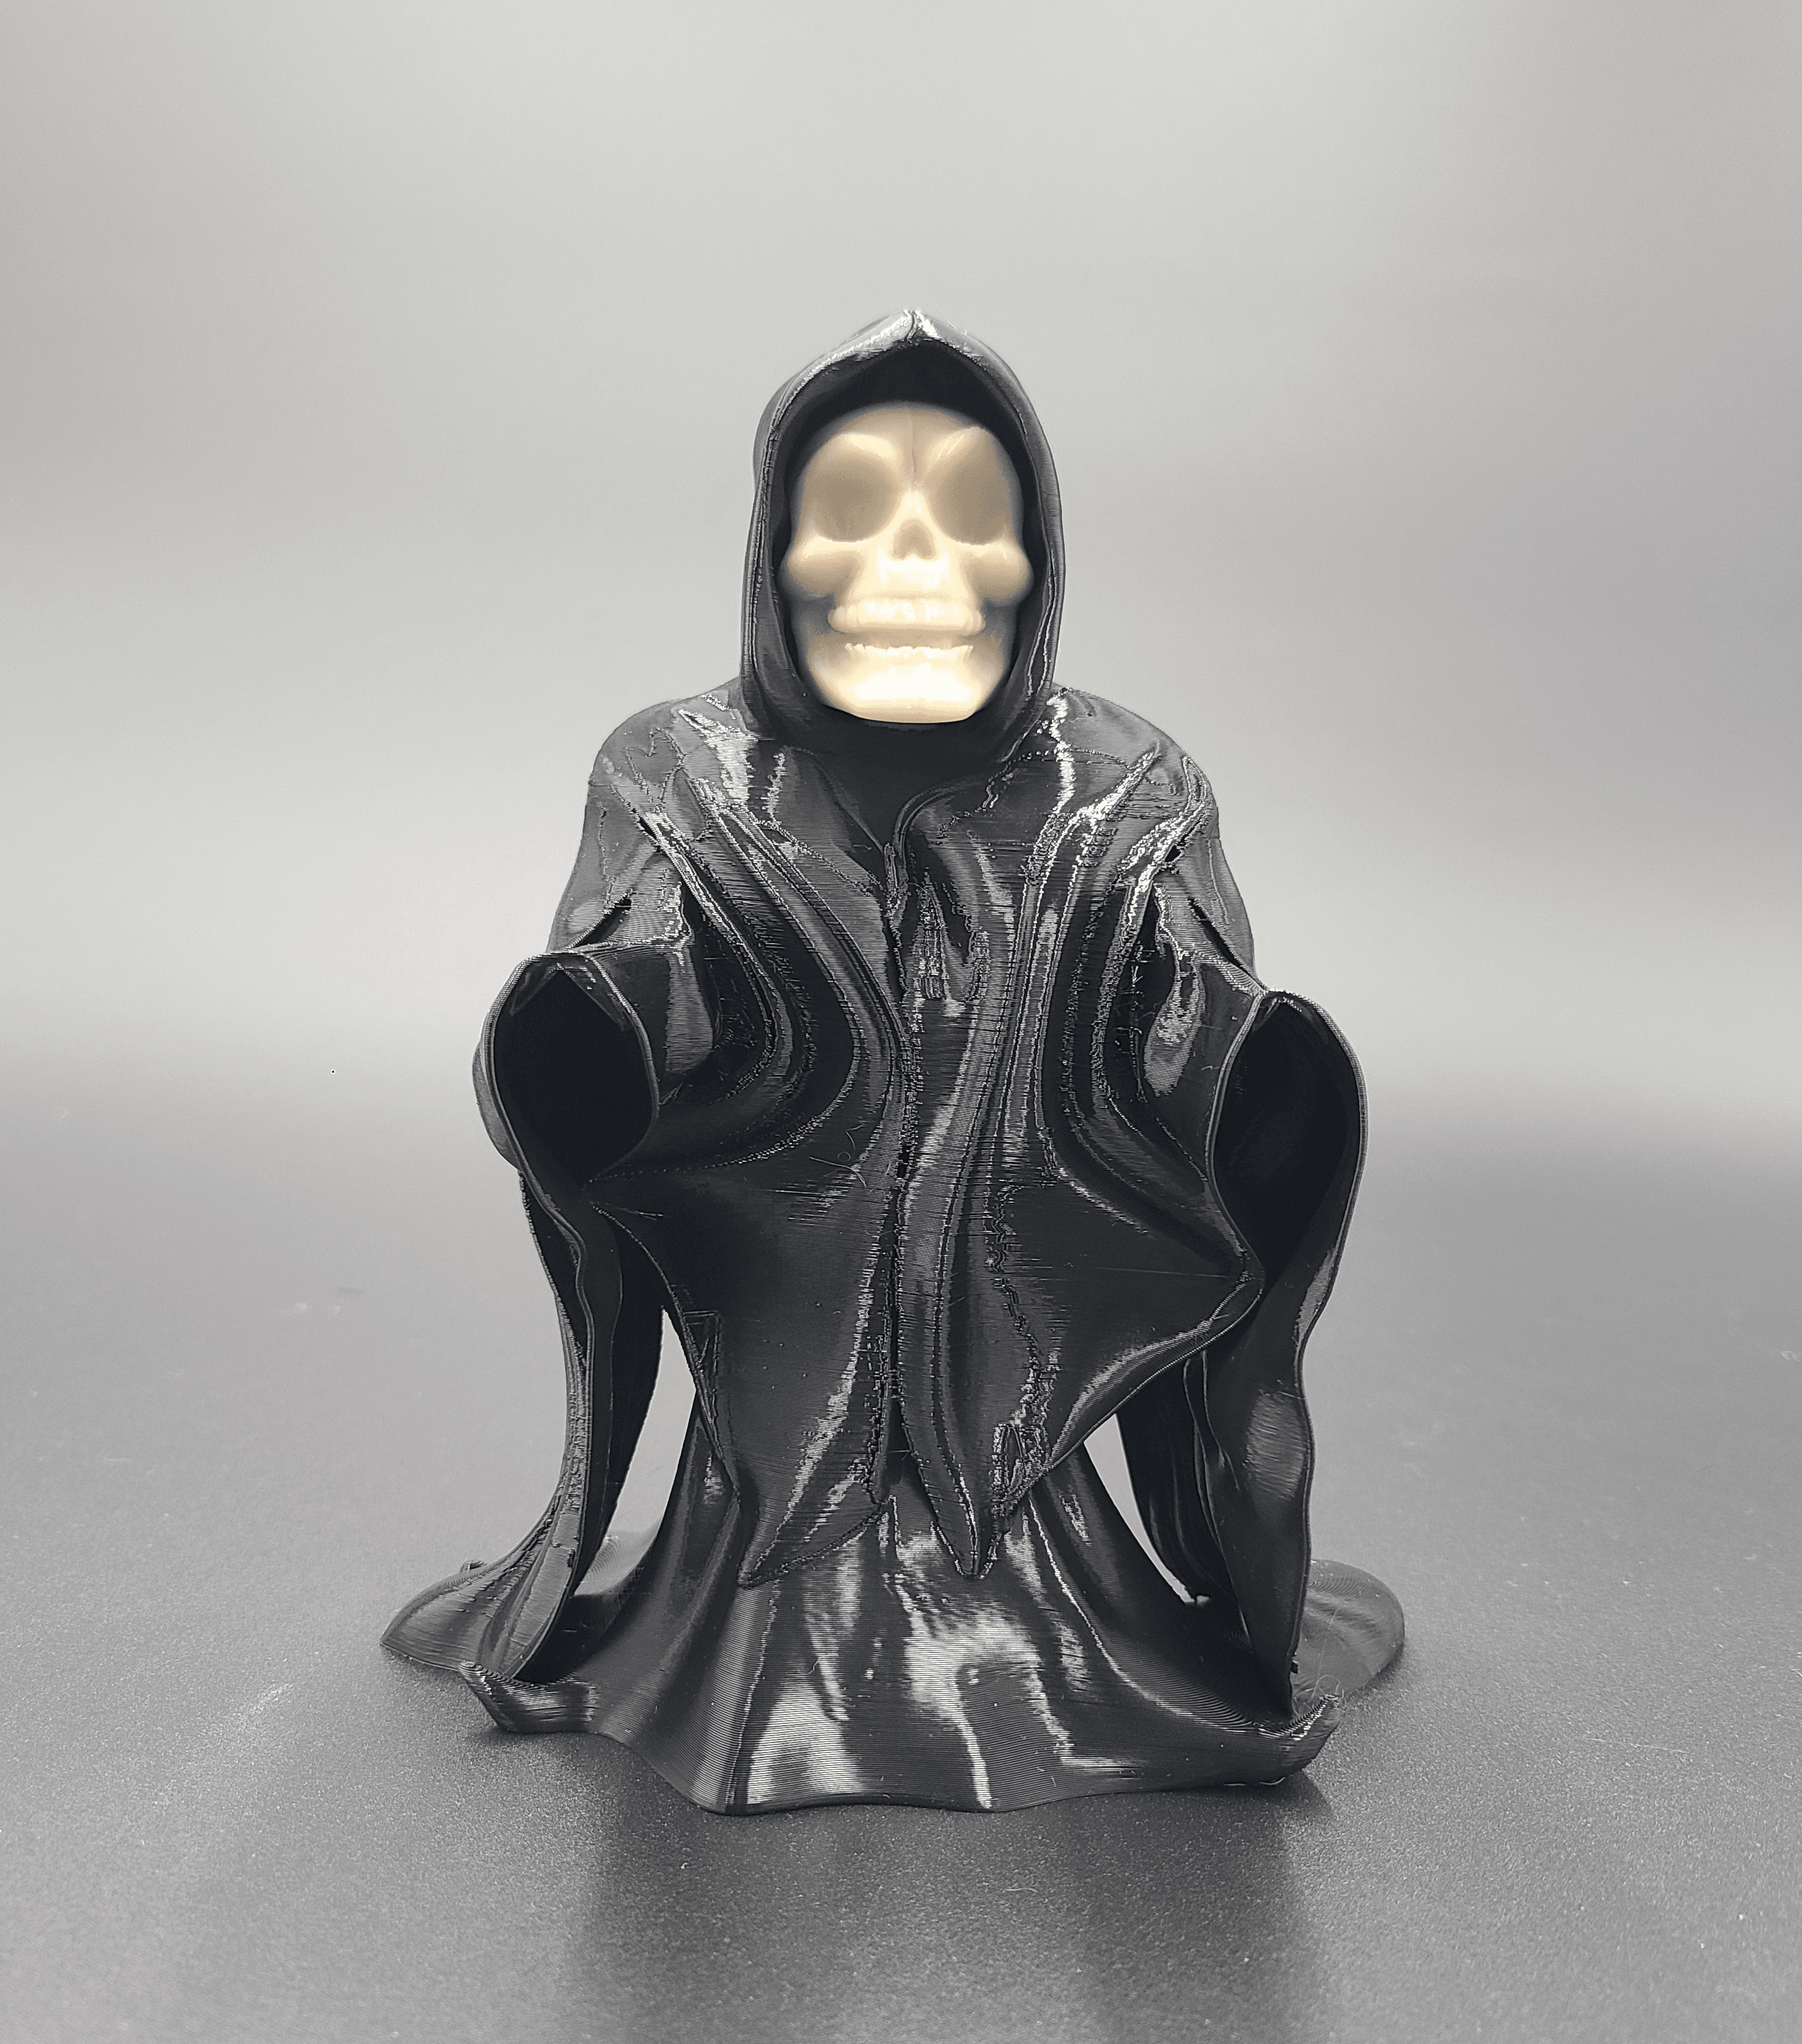 Grim Reaper, Slim Reaper - Articulated Snap-Flex Fidget (Tight Joints) 3d model